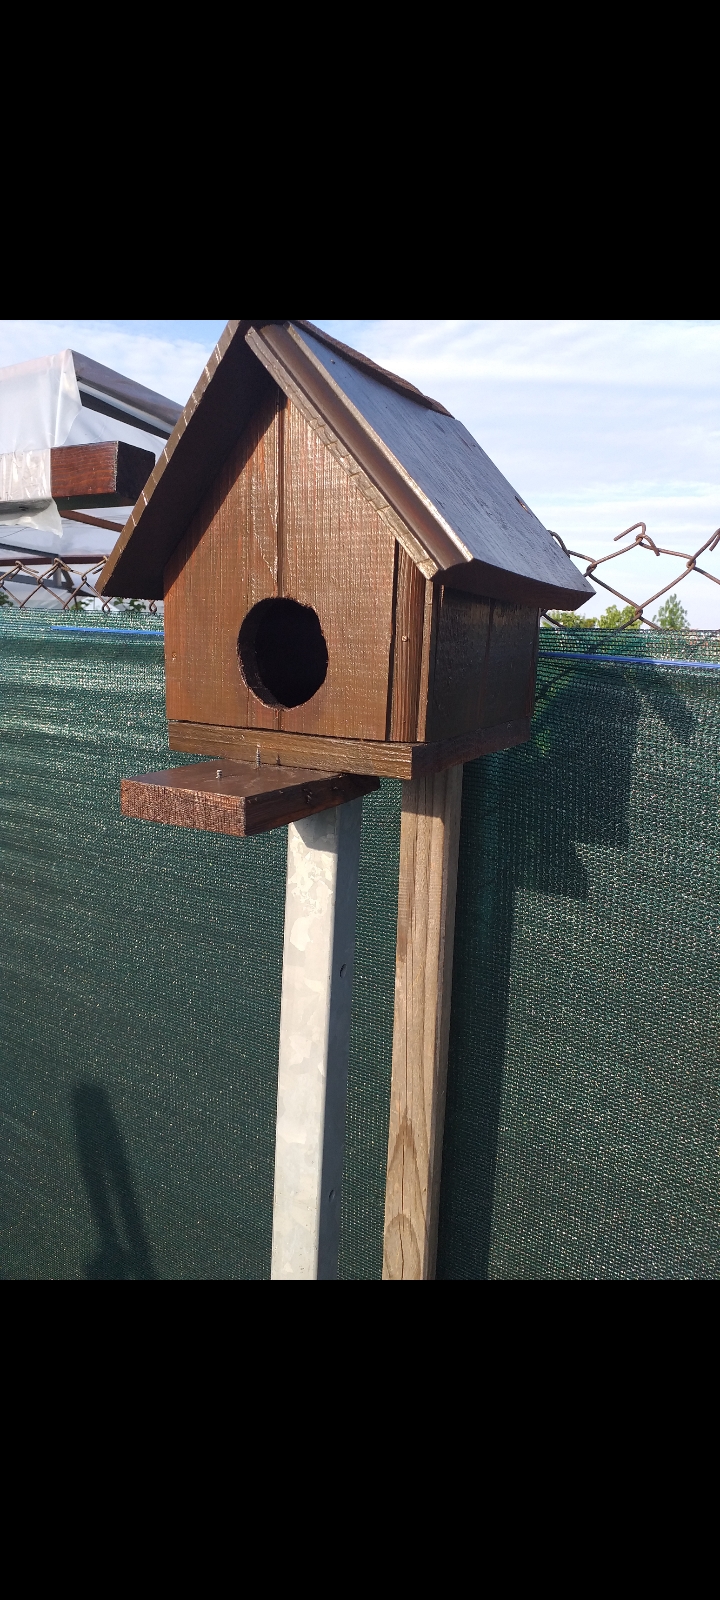 Am făcut o casa pentru pasarele!